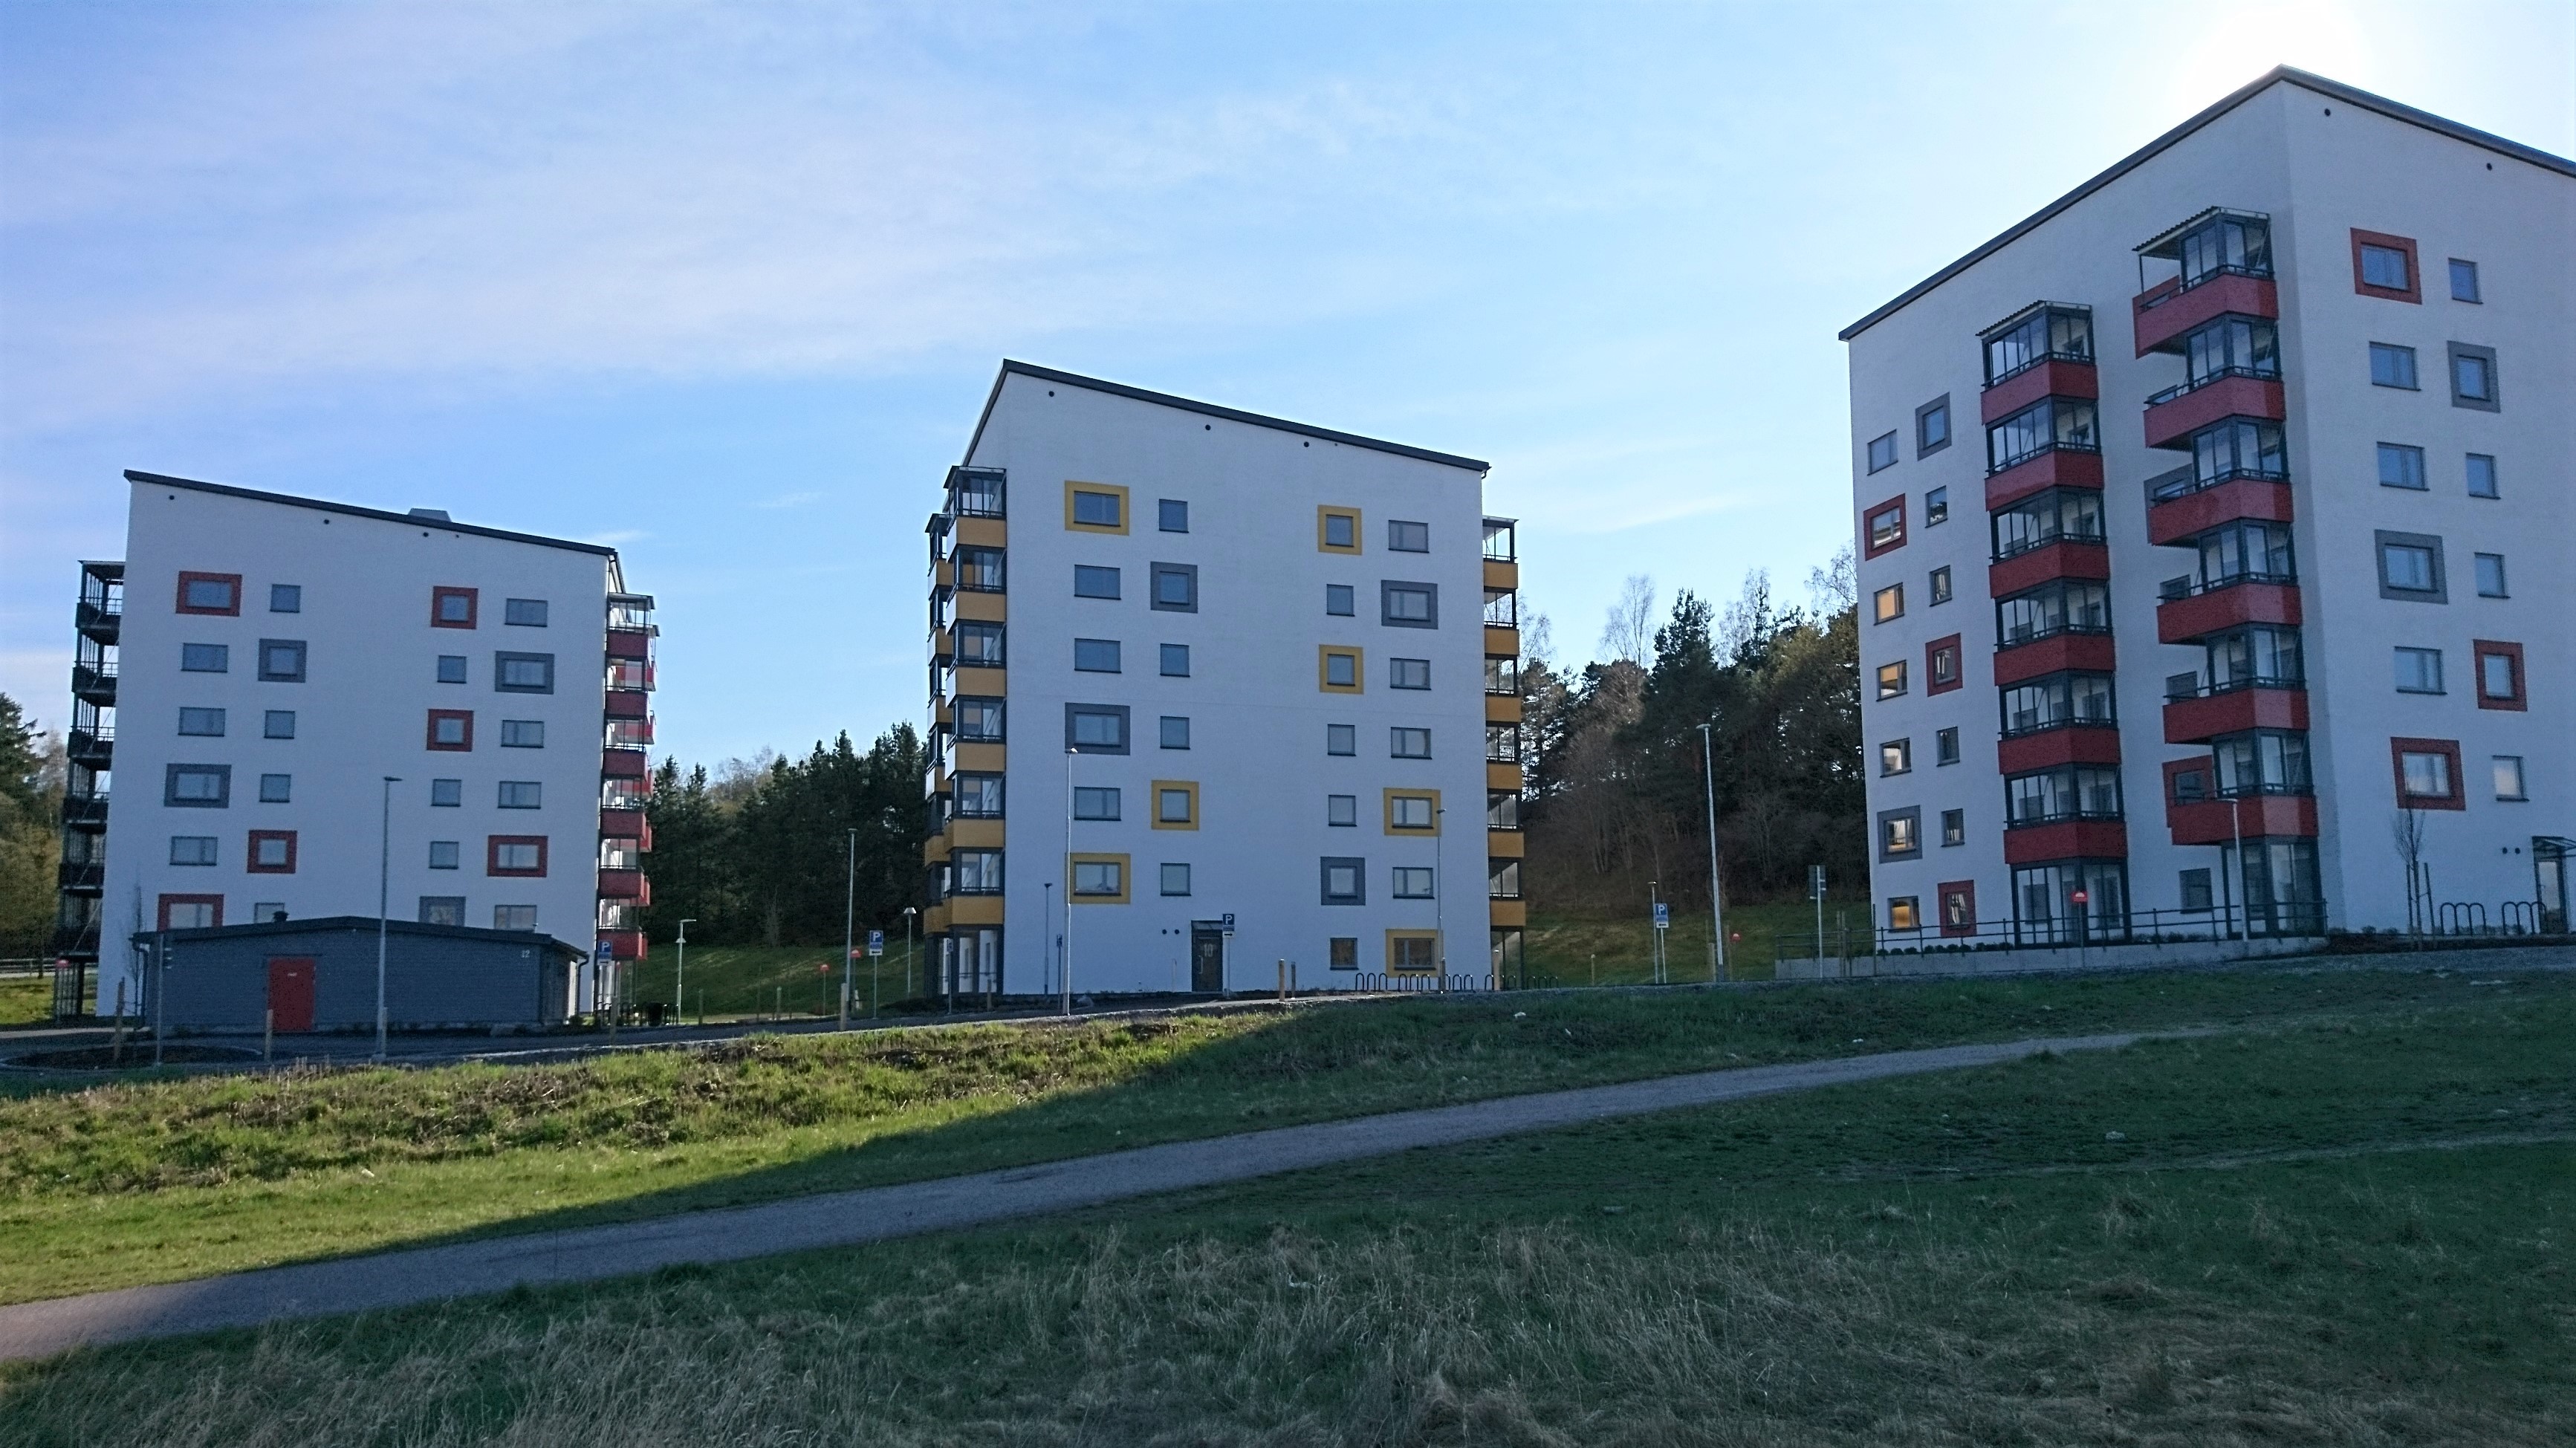 Fortfarande tomma spökhus i Märsta port | Vänsterpartiet ...